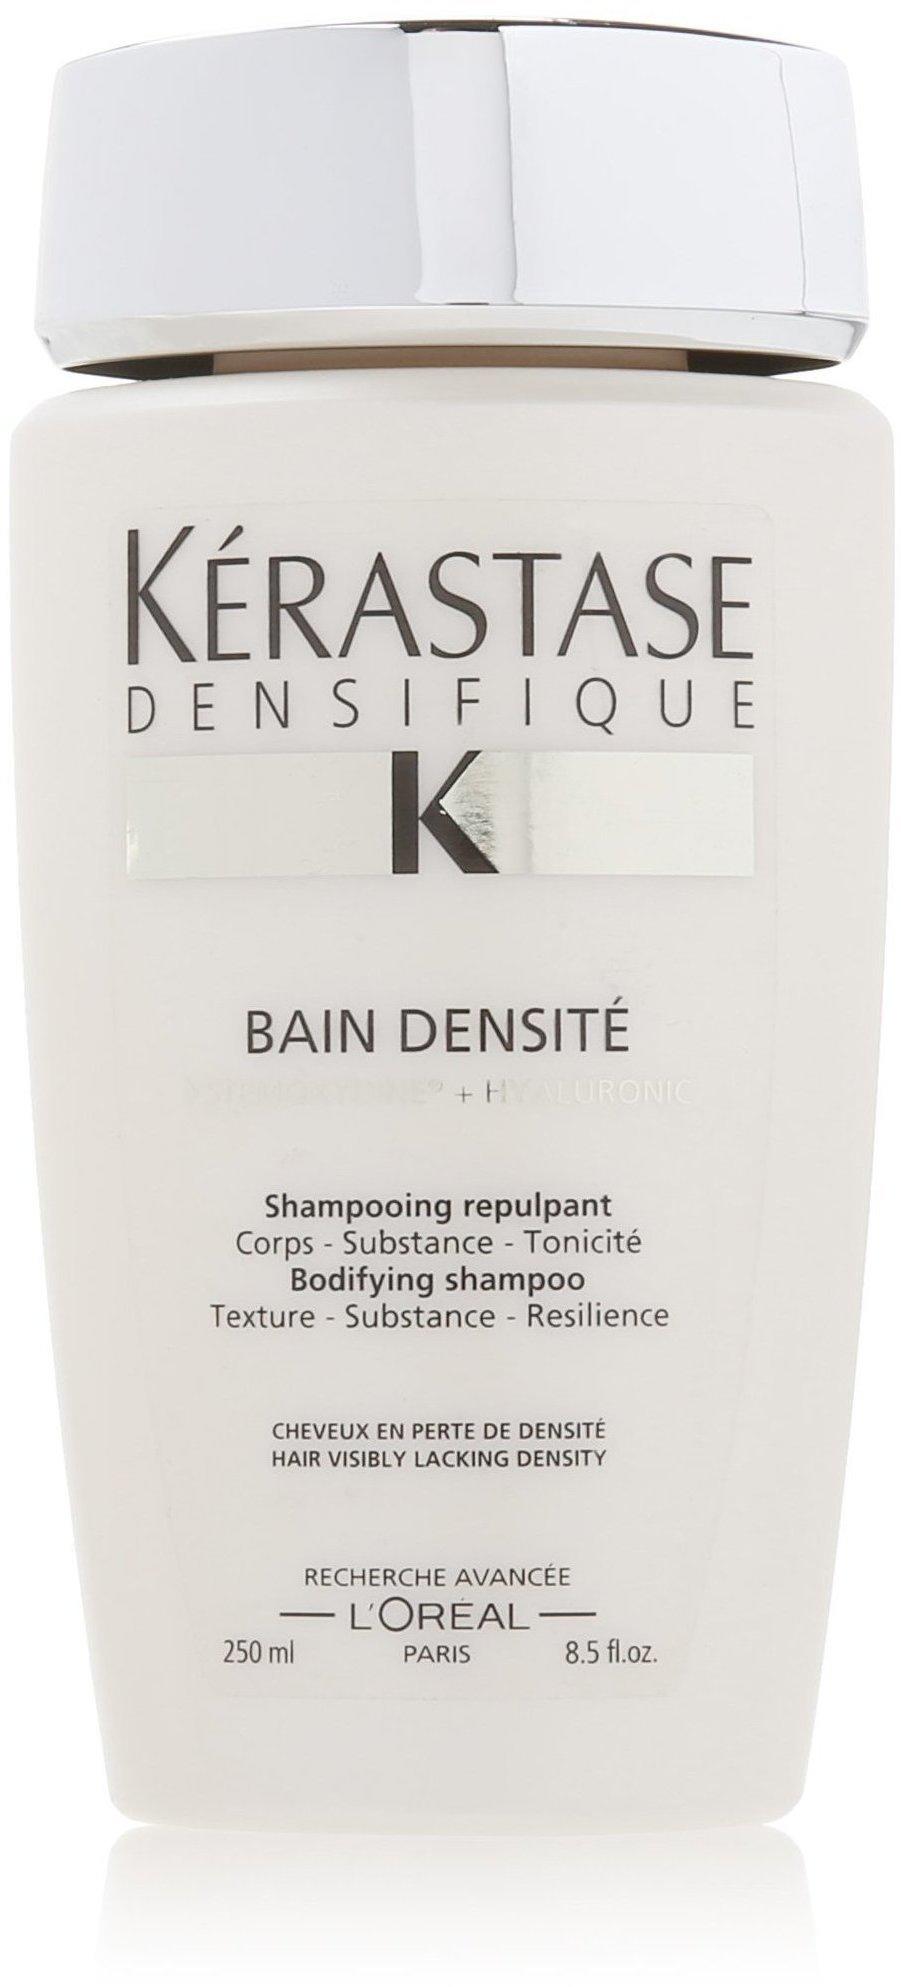 Kérastase Densifique K Bain Densité Shampoo (250ml) Erfahrungen 4.6/5  Sternen